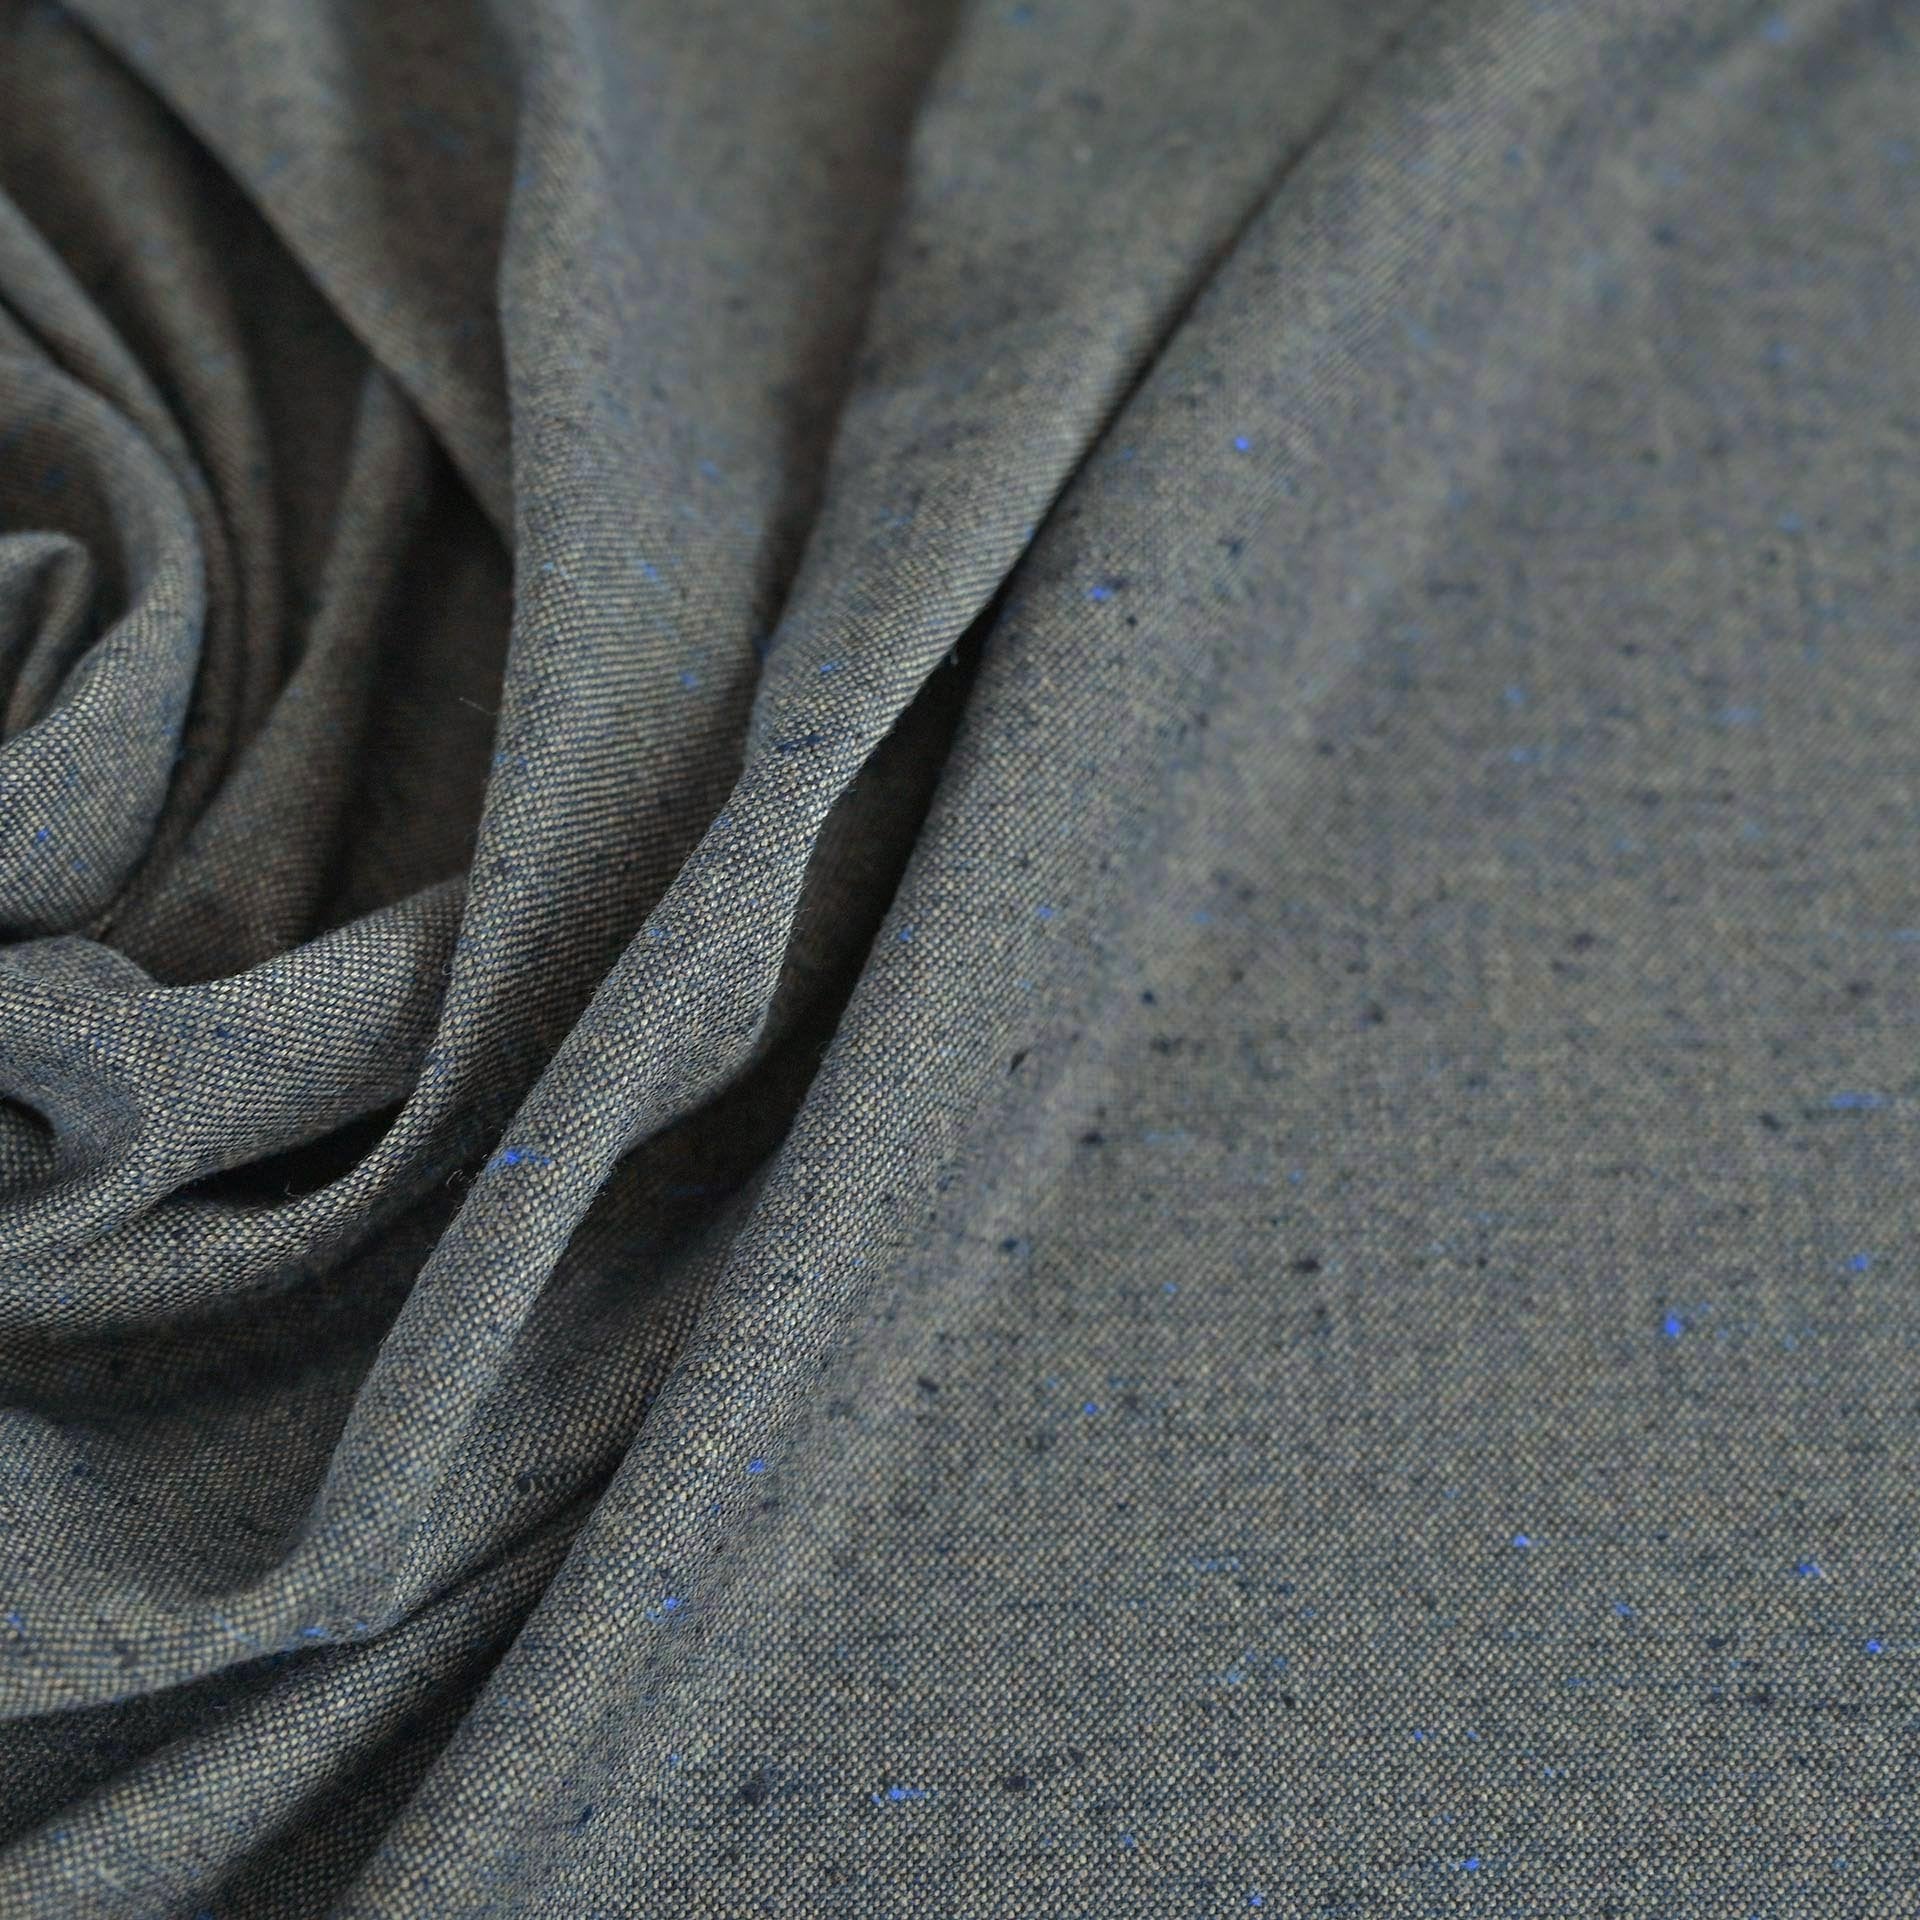 Navy Tweed Fabric 5679